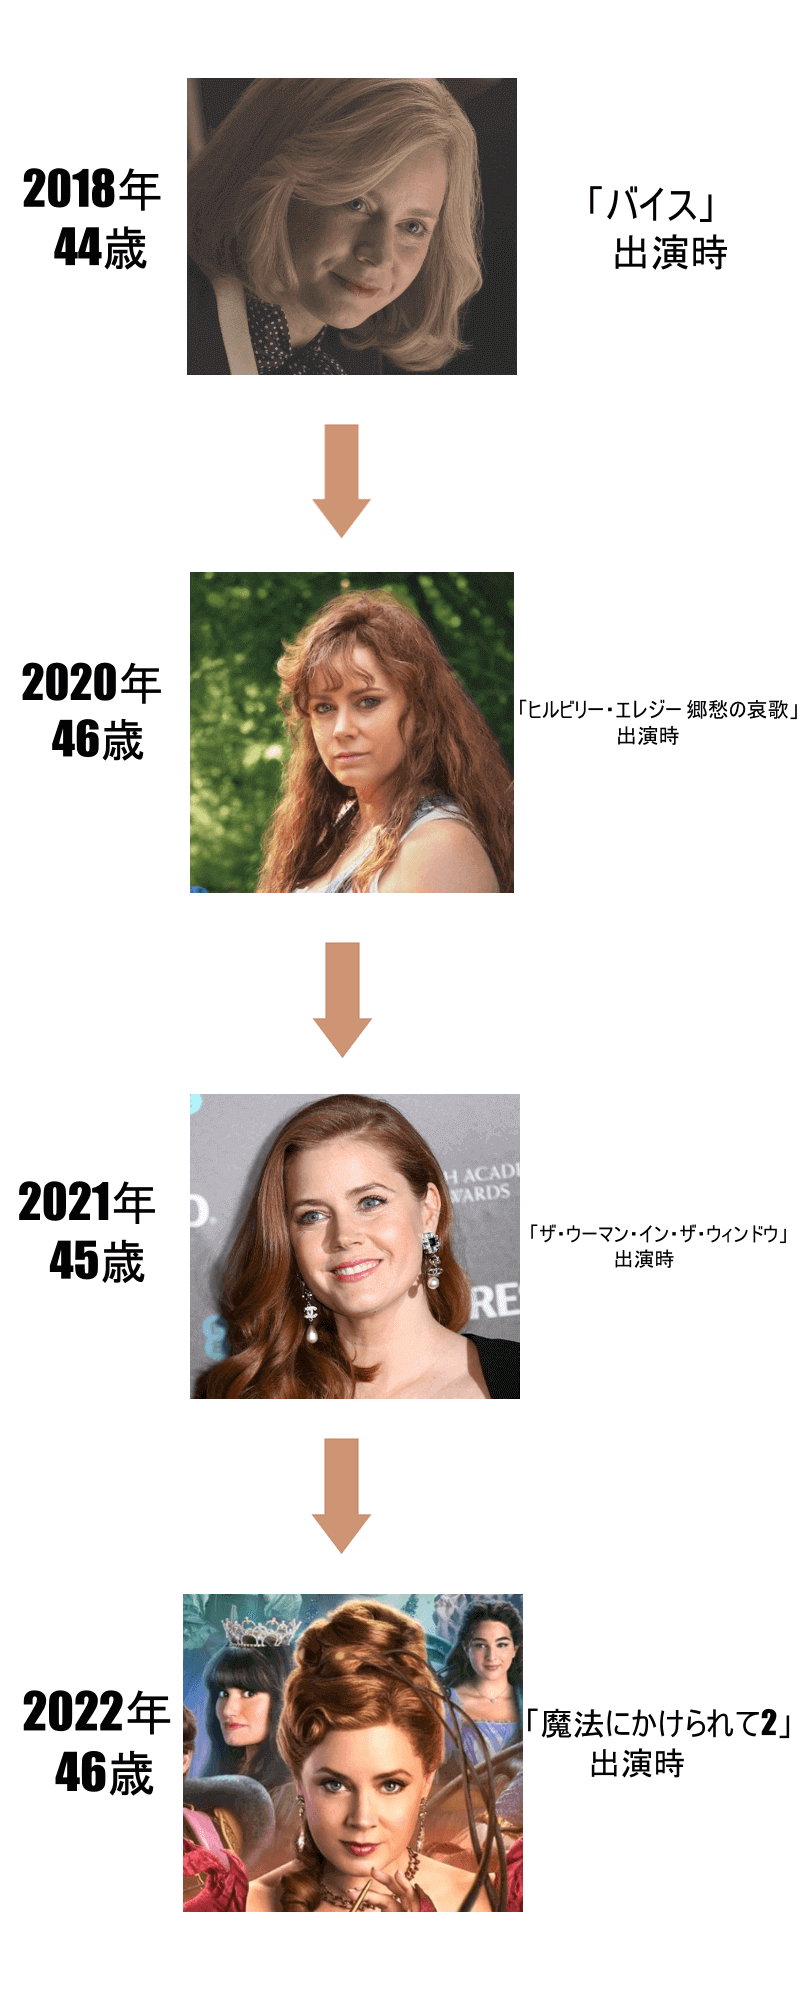 エイミーアダムスの画像年表2018年から2022年まで